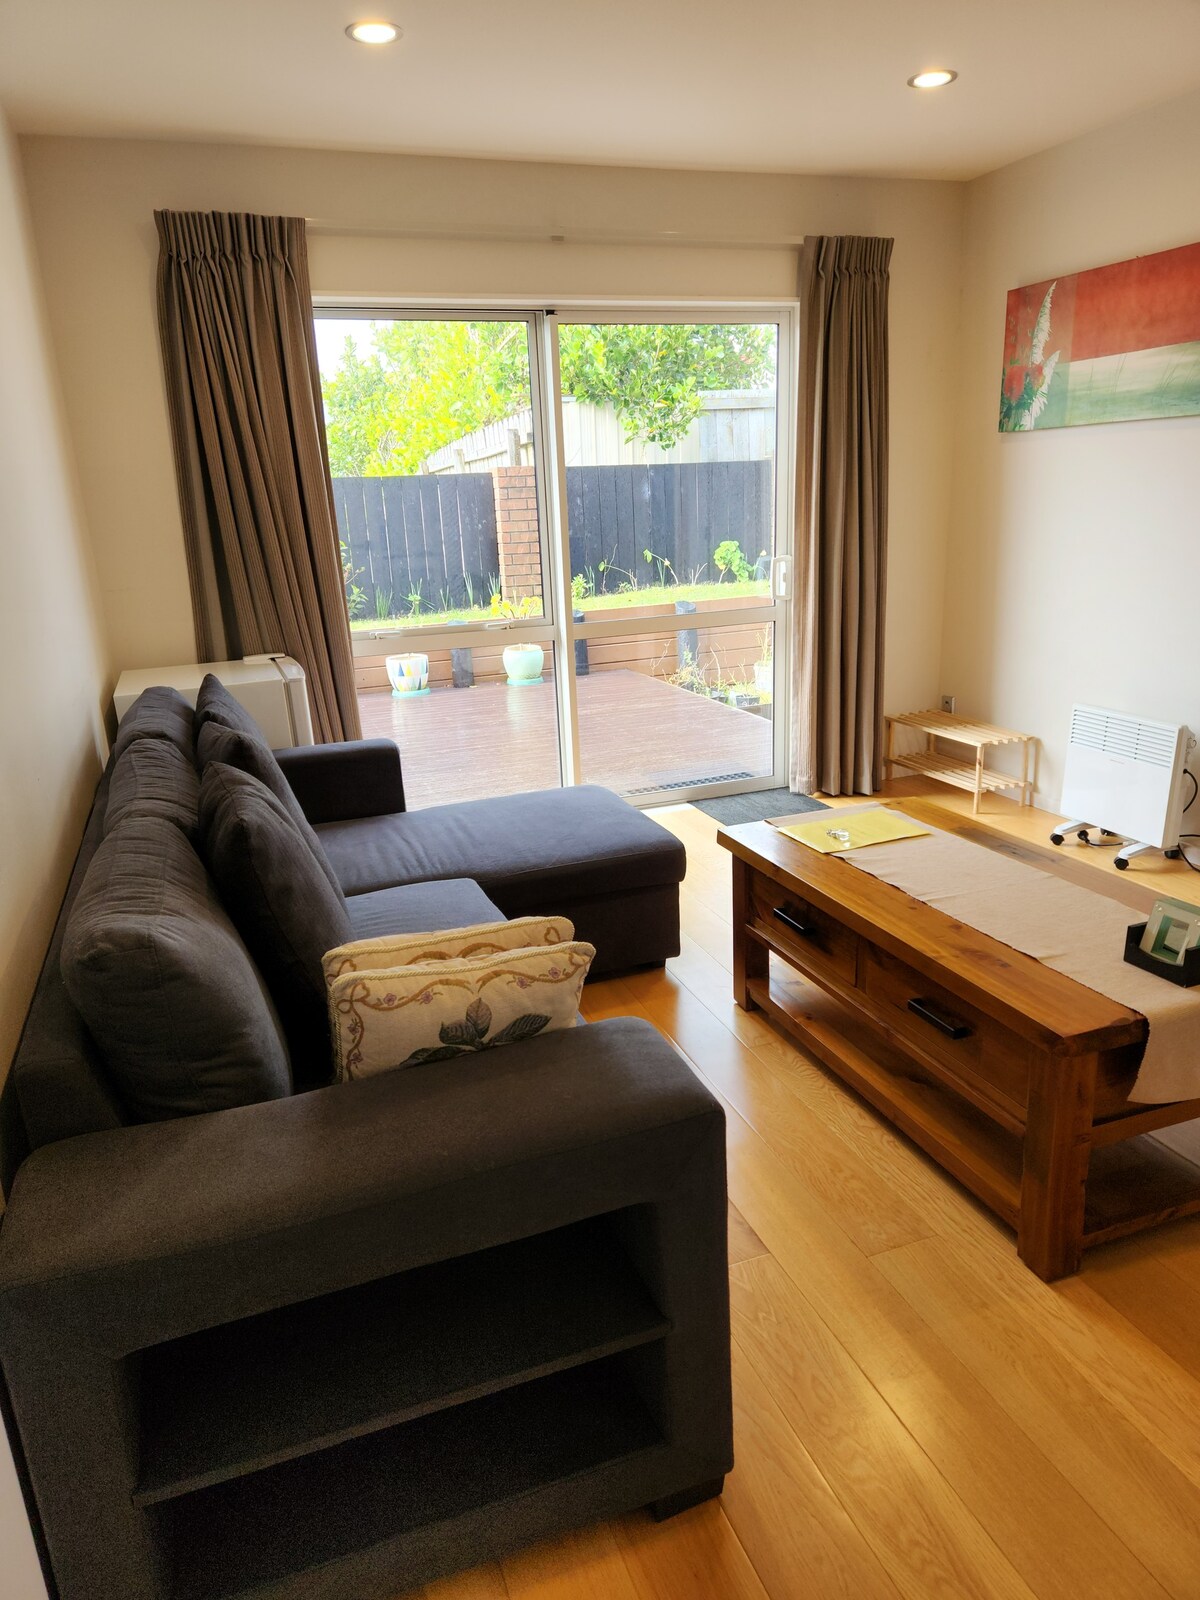 便宜、舒适、舒适、新西兰的奥克兰房源